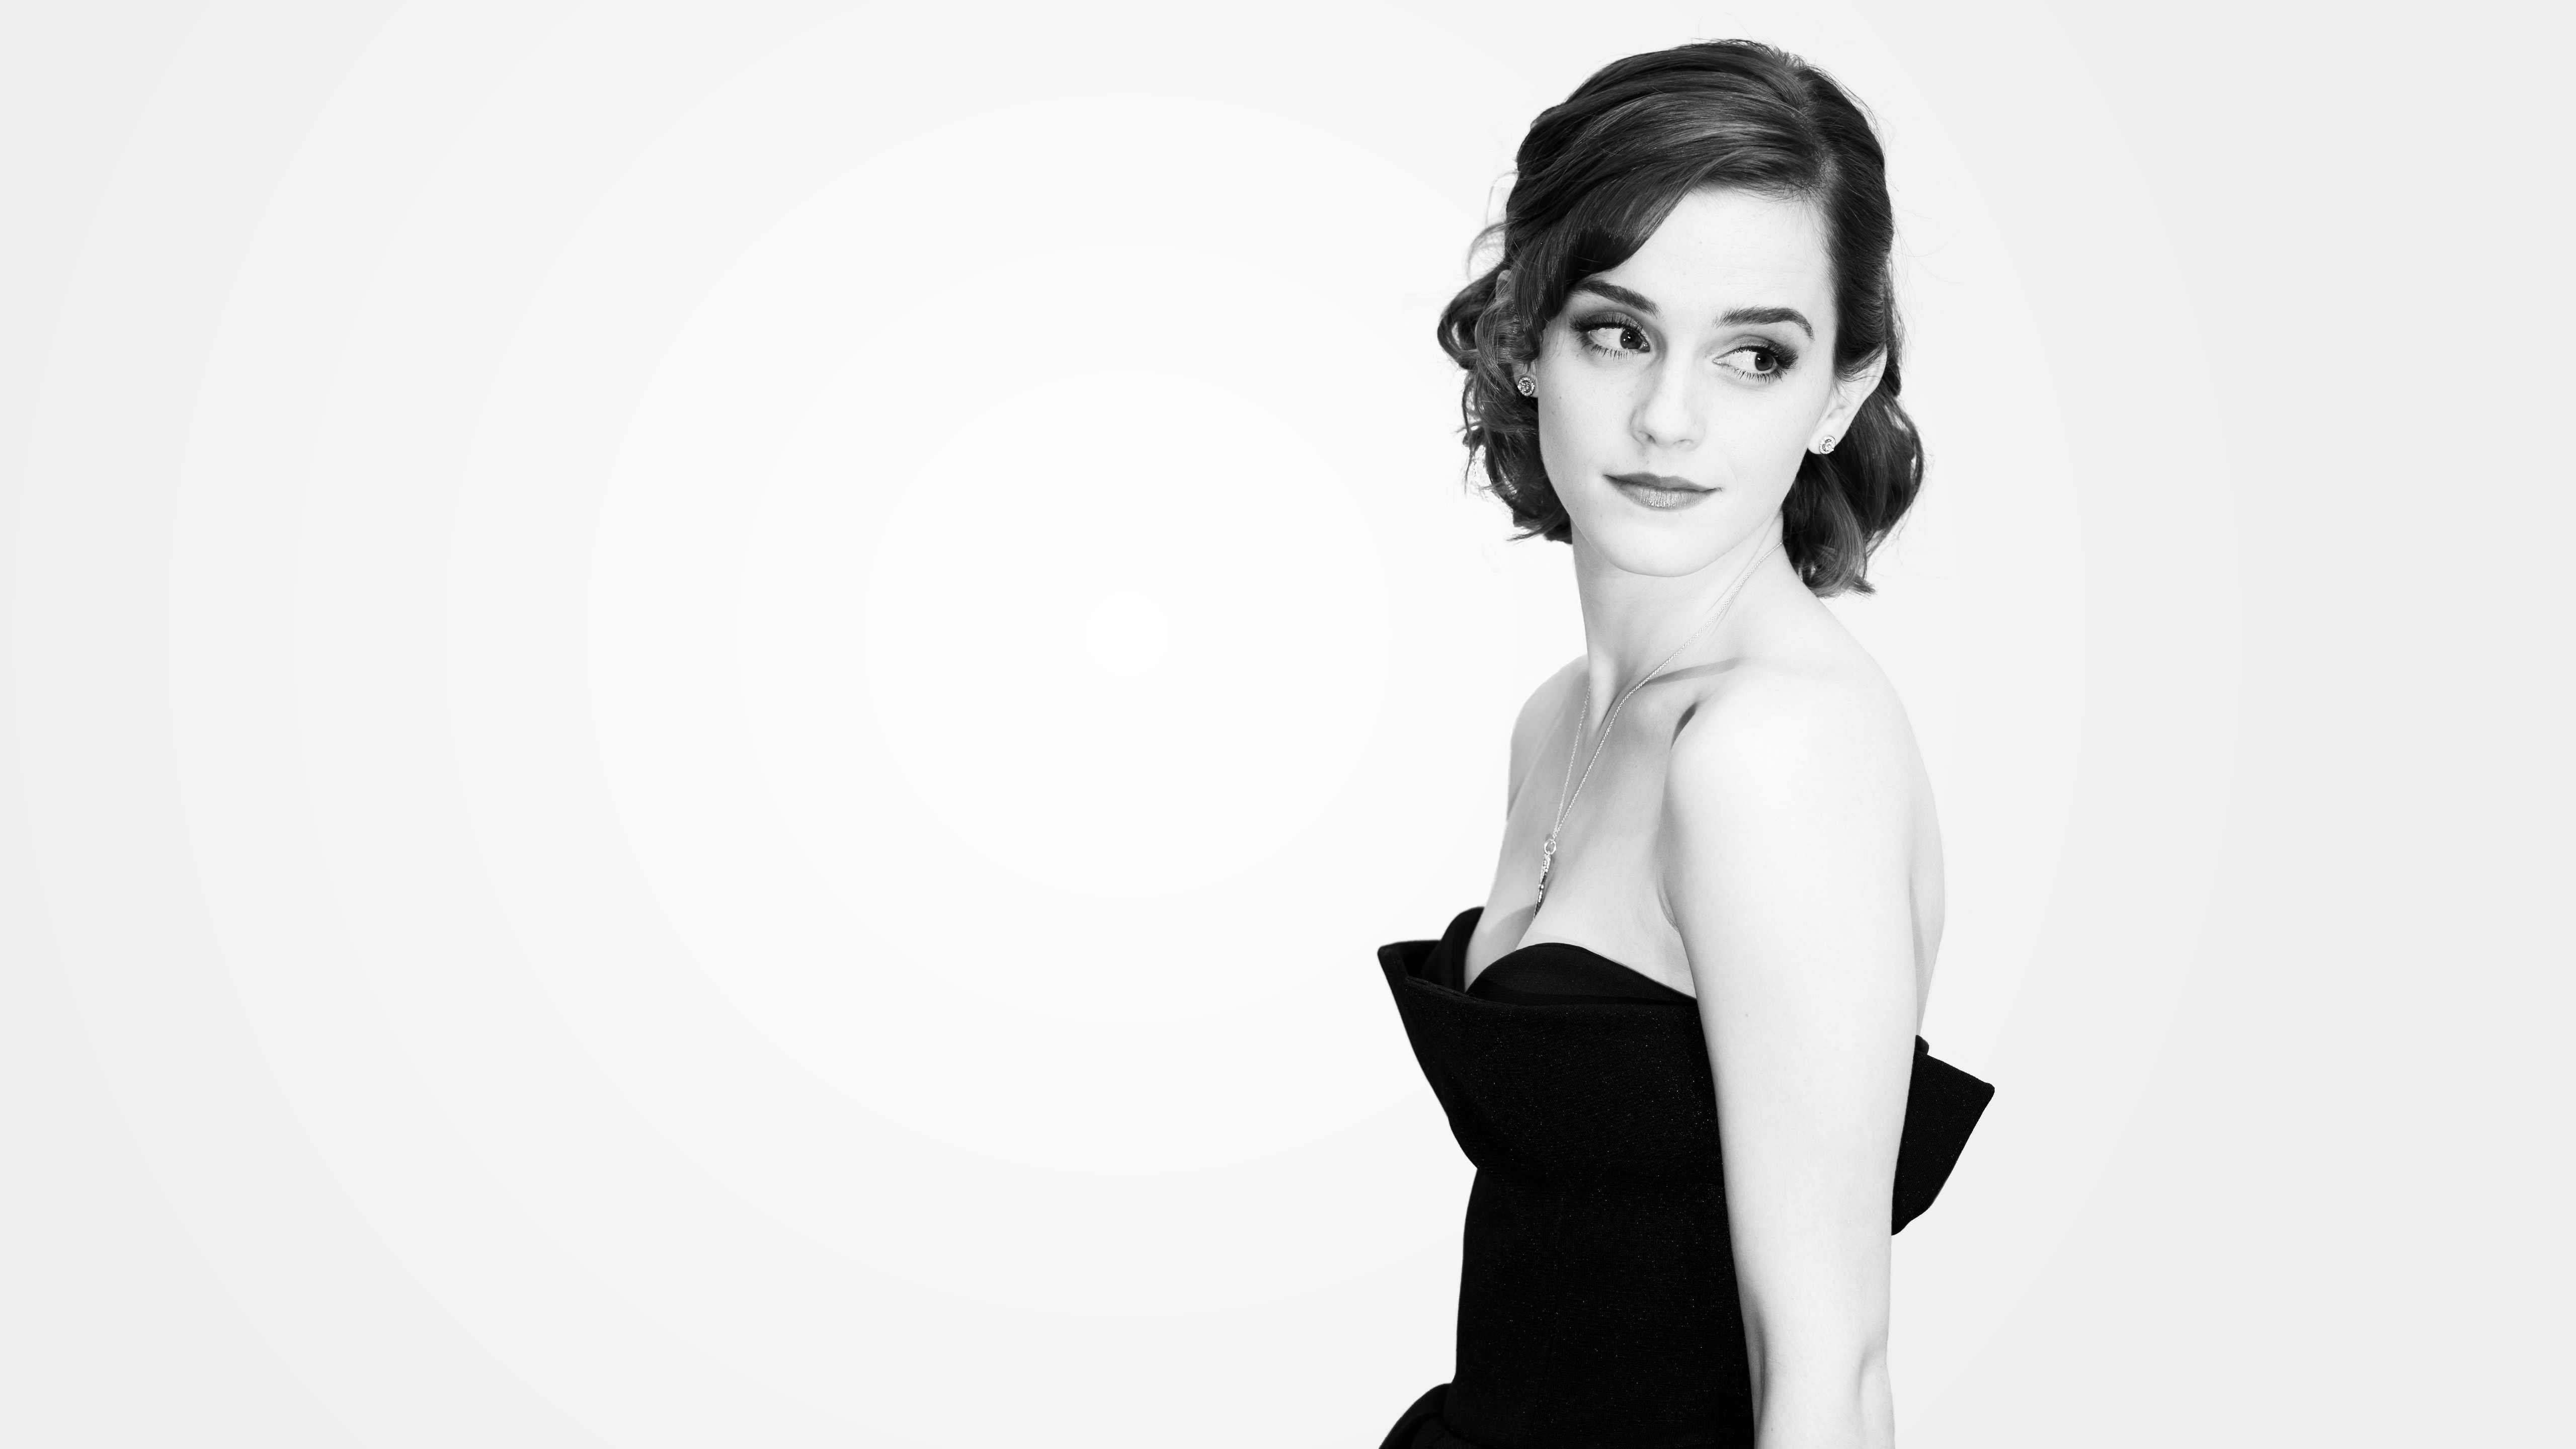 Emma Watson 5k Wallpaper - Emma Watson Wallpaper Hd - 5120x2880 Wallpaper -  